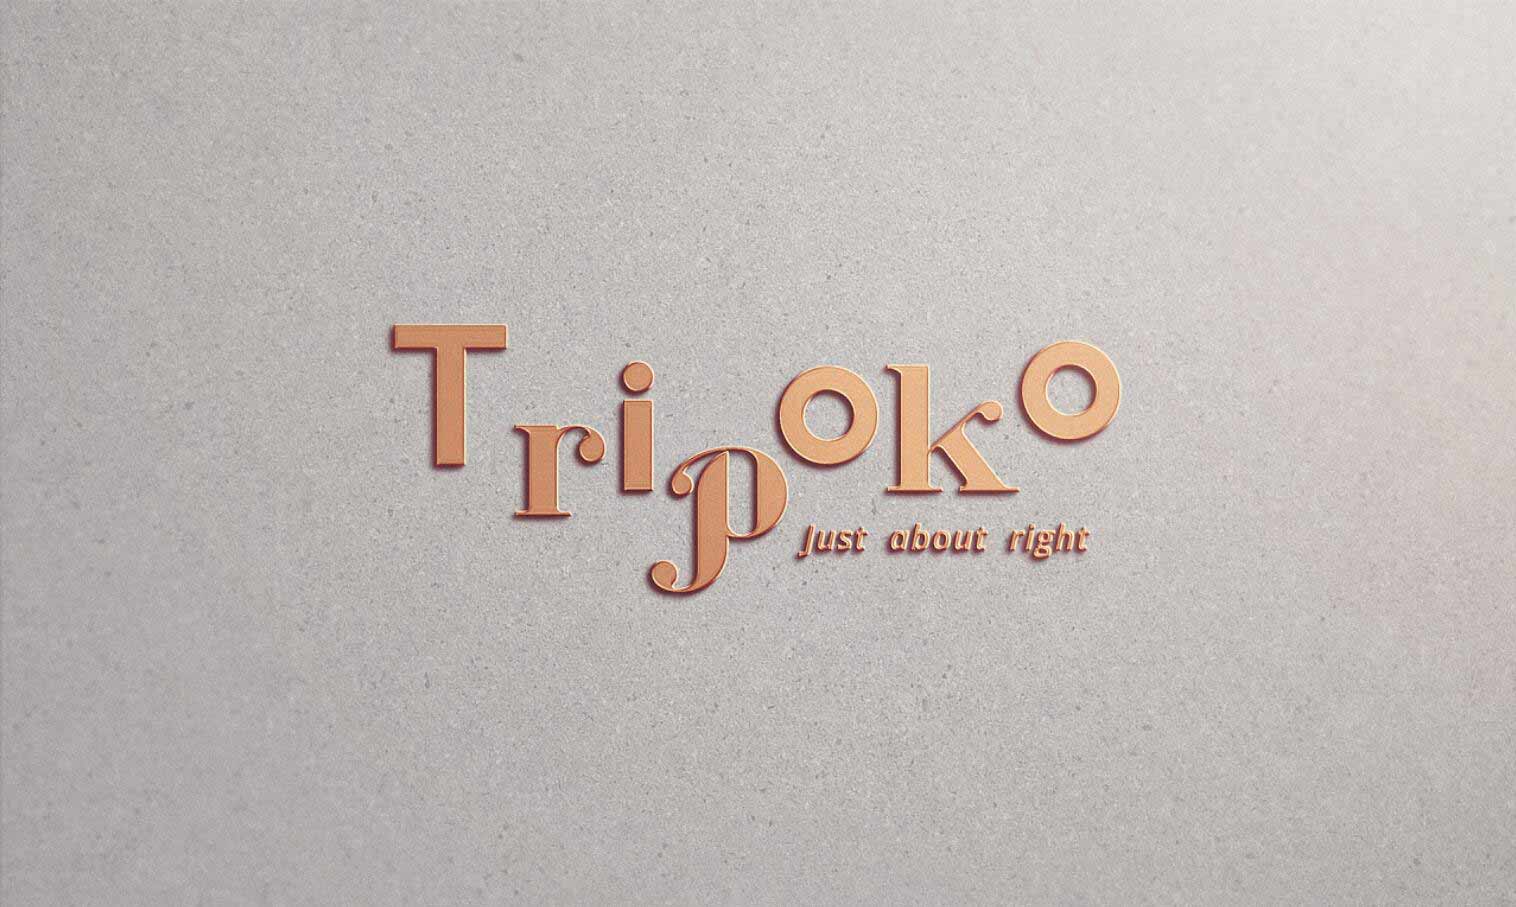 红酒品牌Tripoko